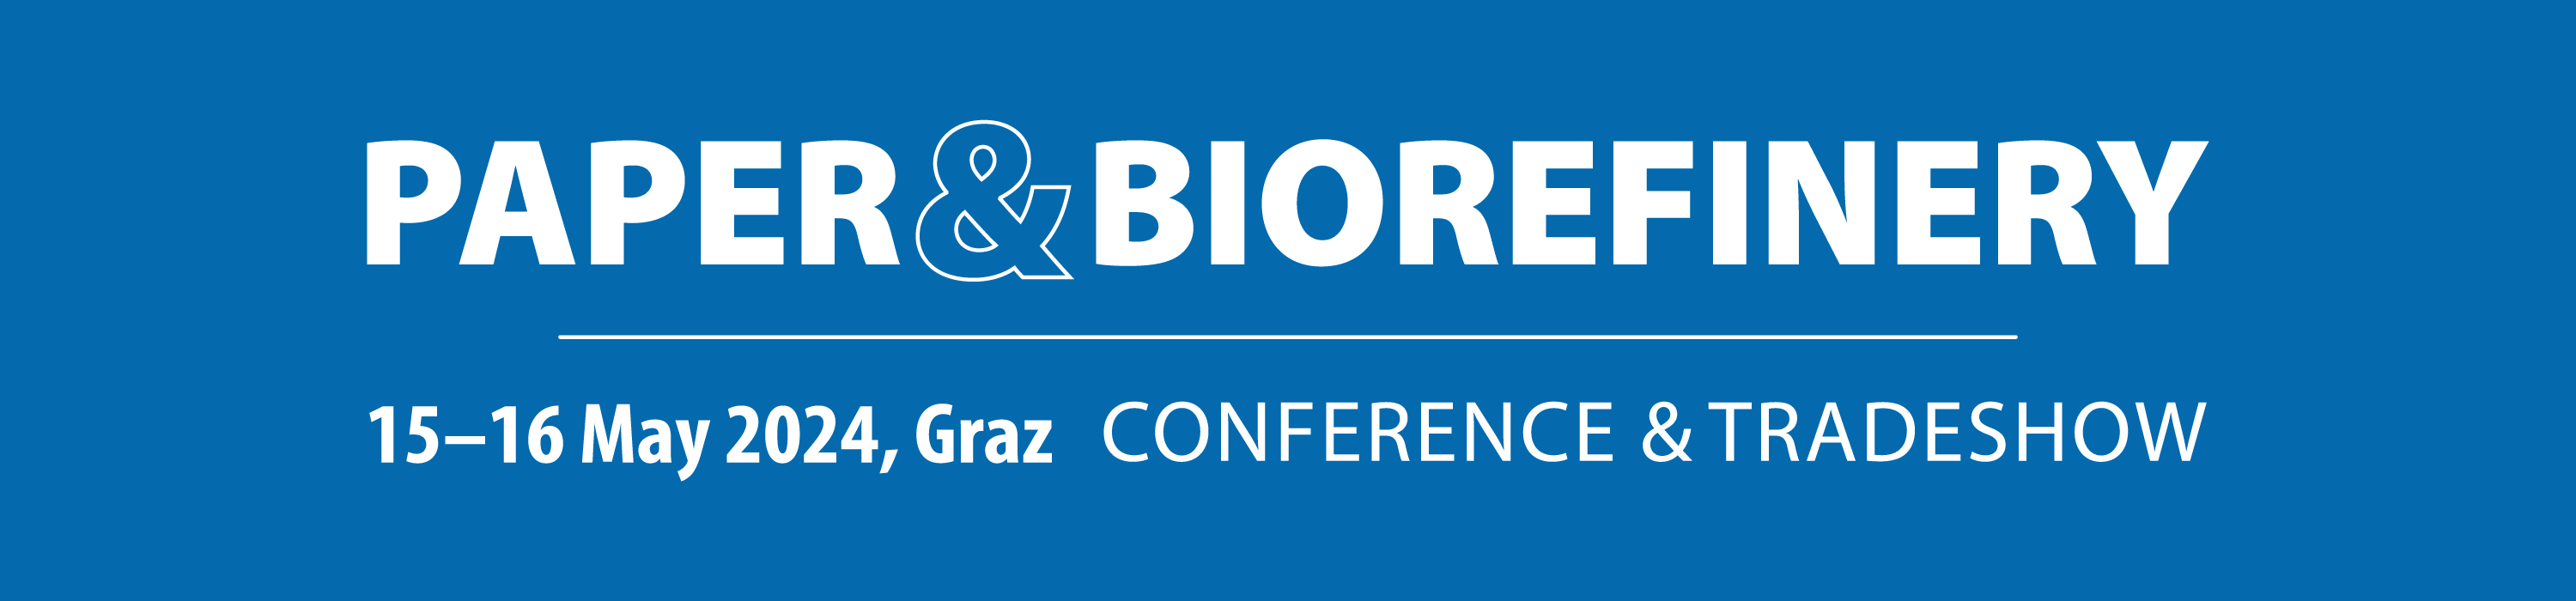 Logo Paper & Biorefinery Conference 2024